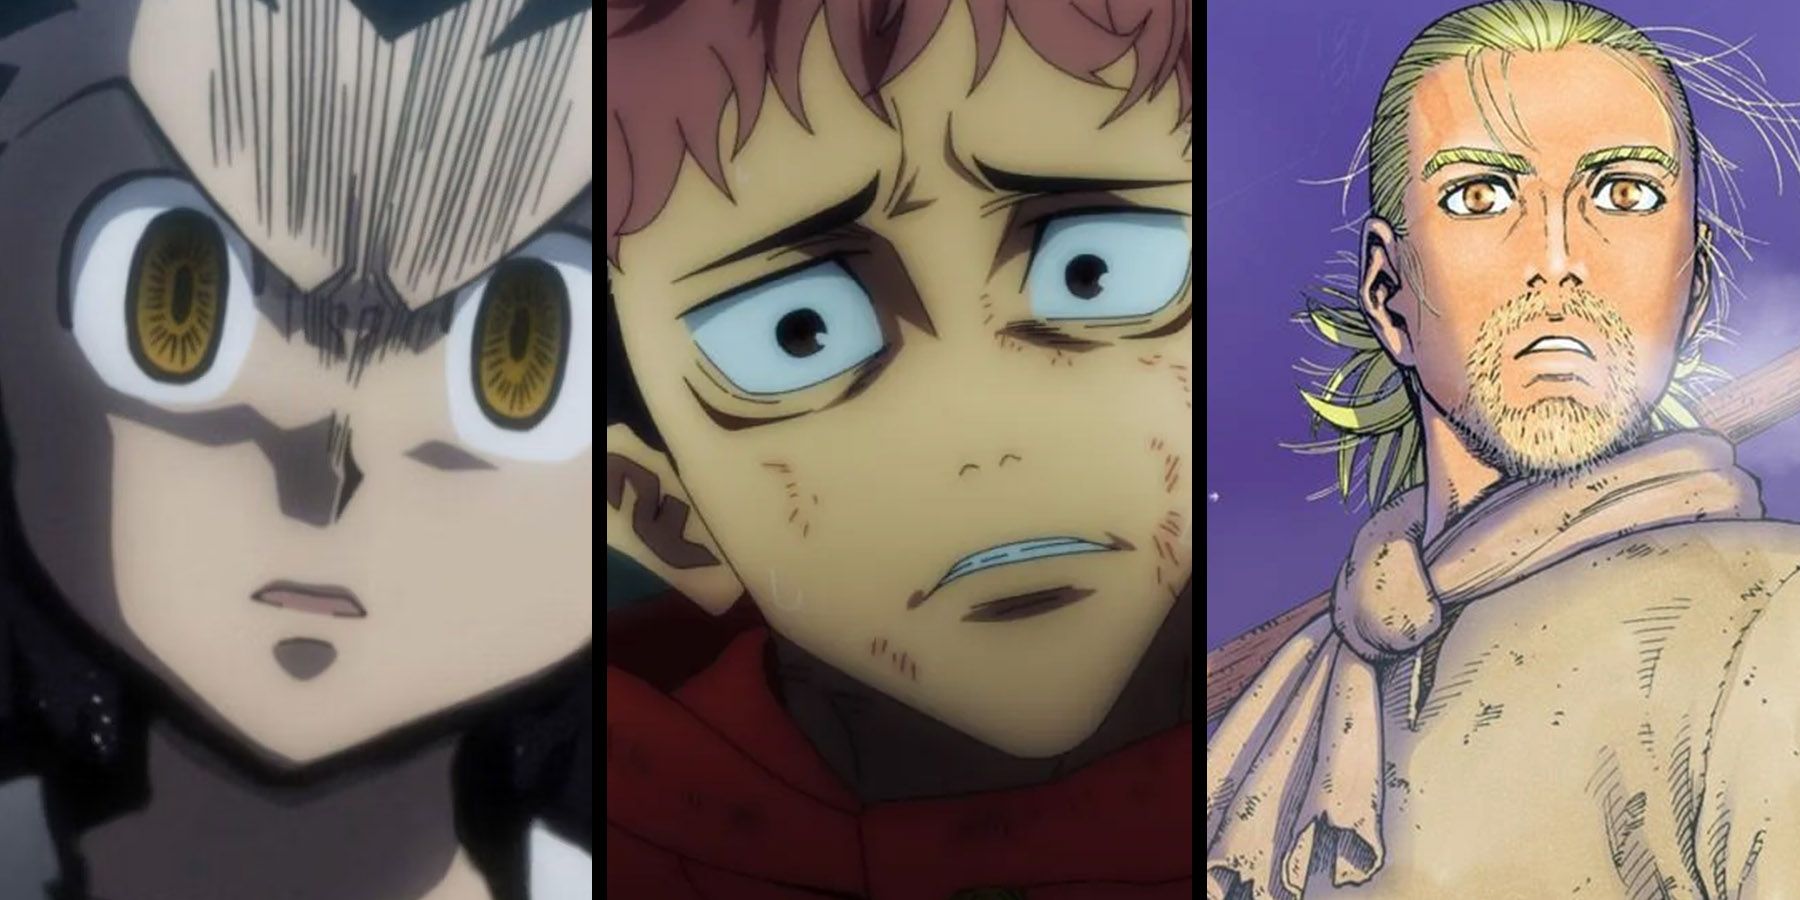 Best Shounen Anime | List Of Top 15 You Must Watch 2023